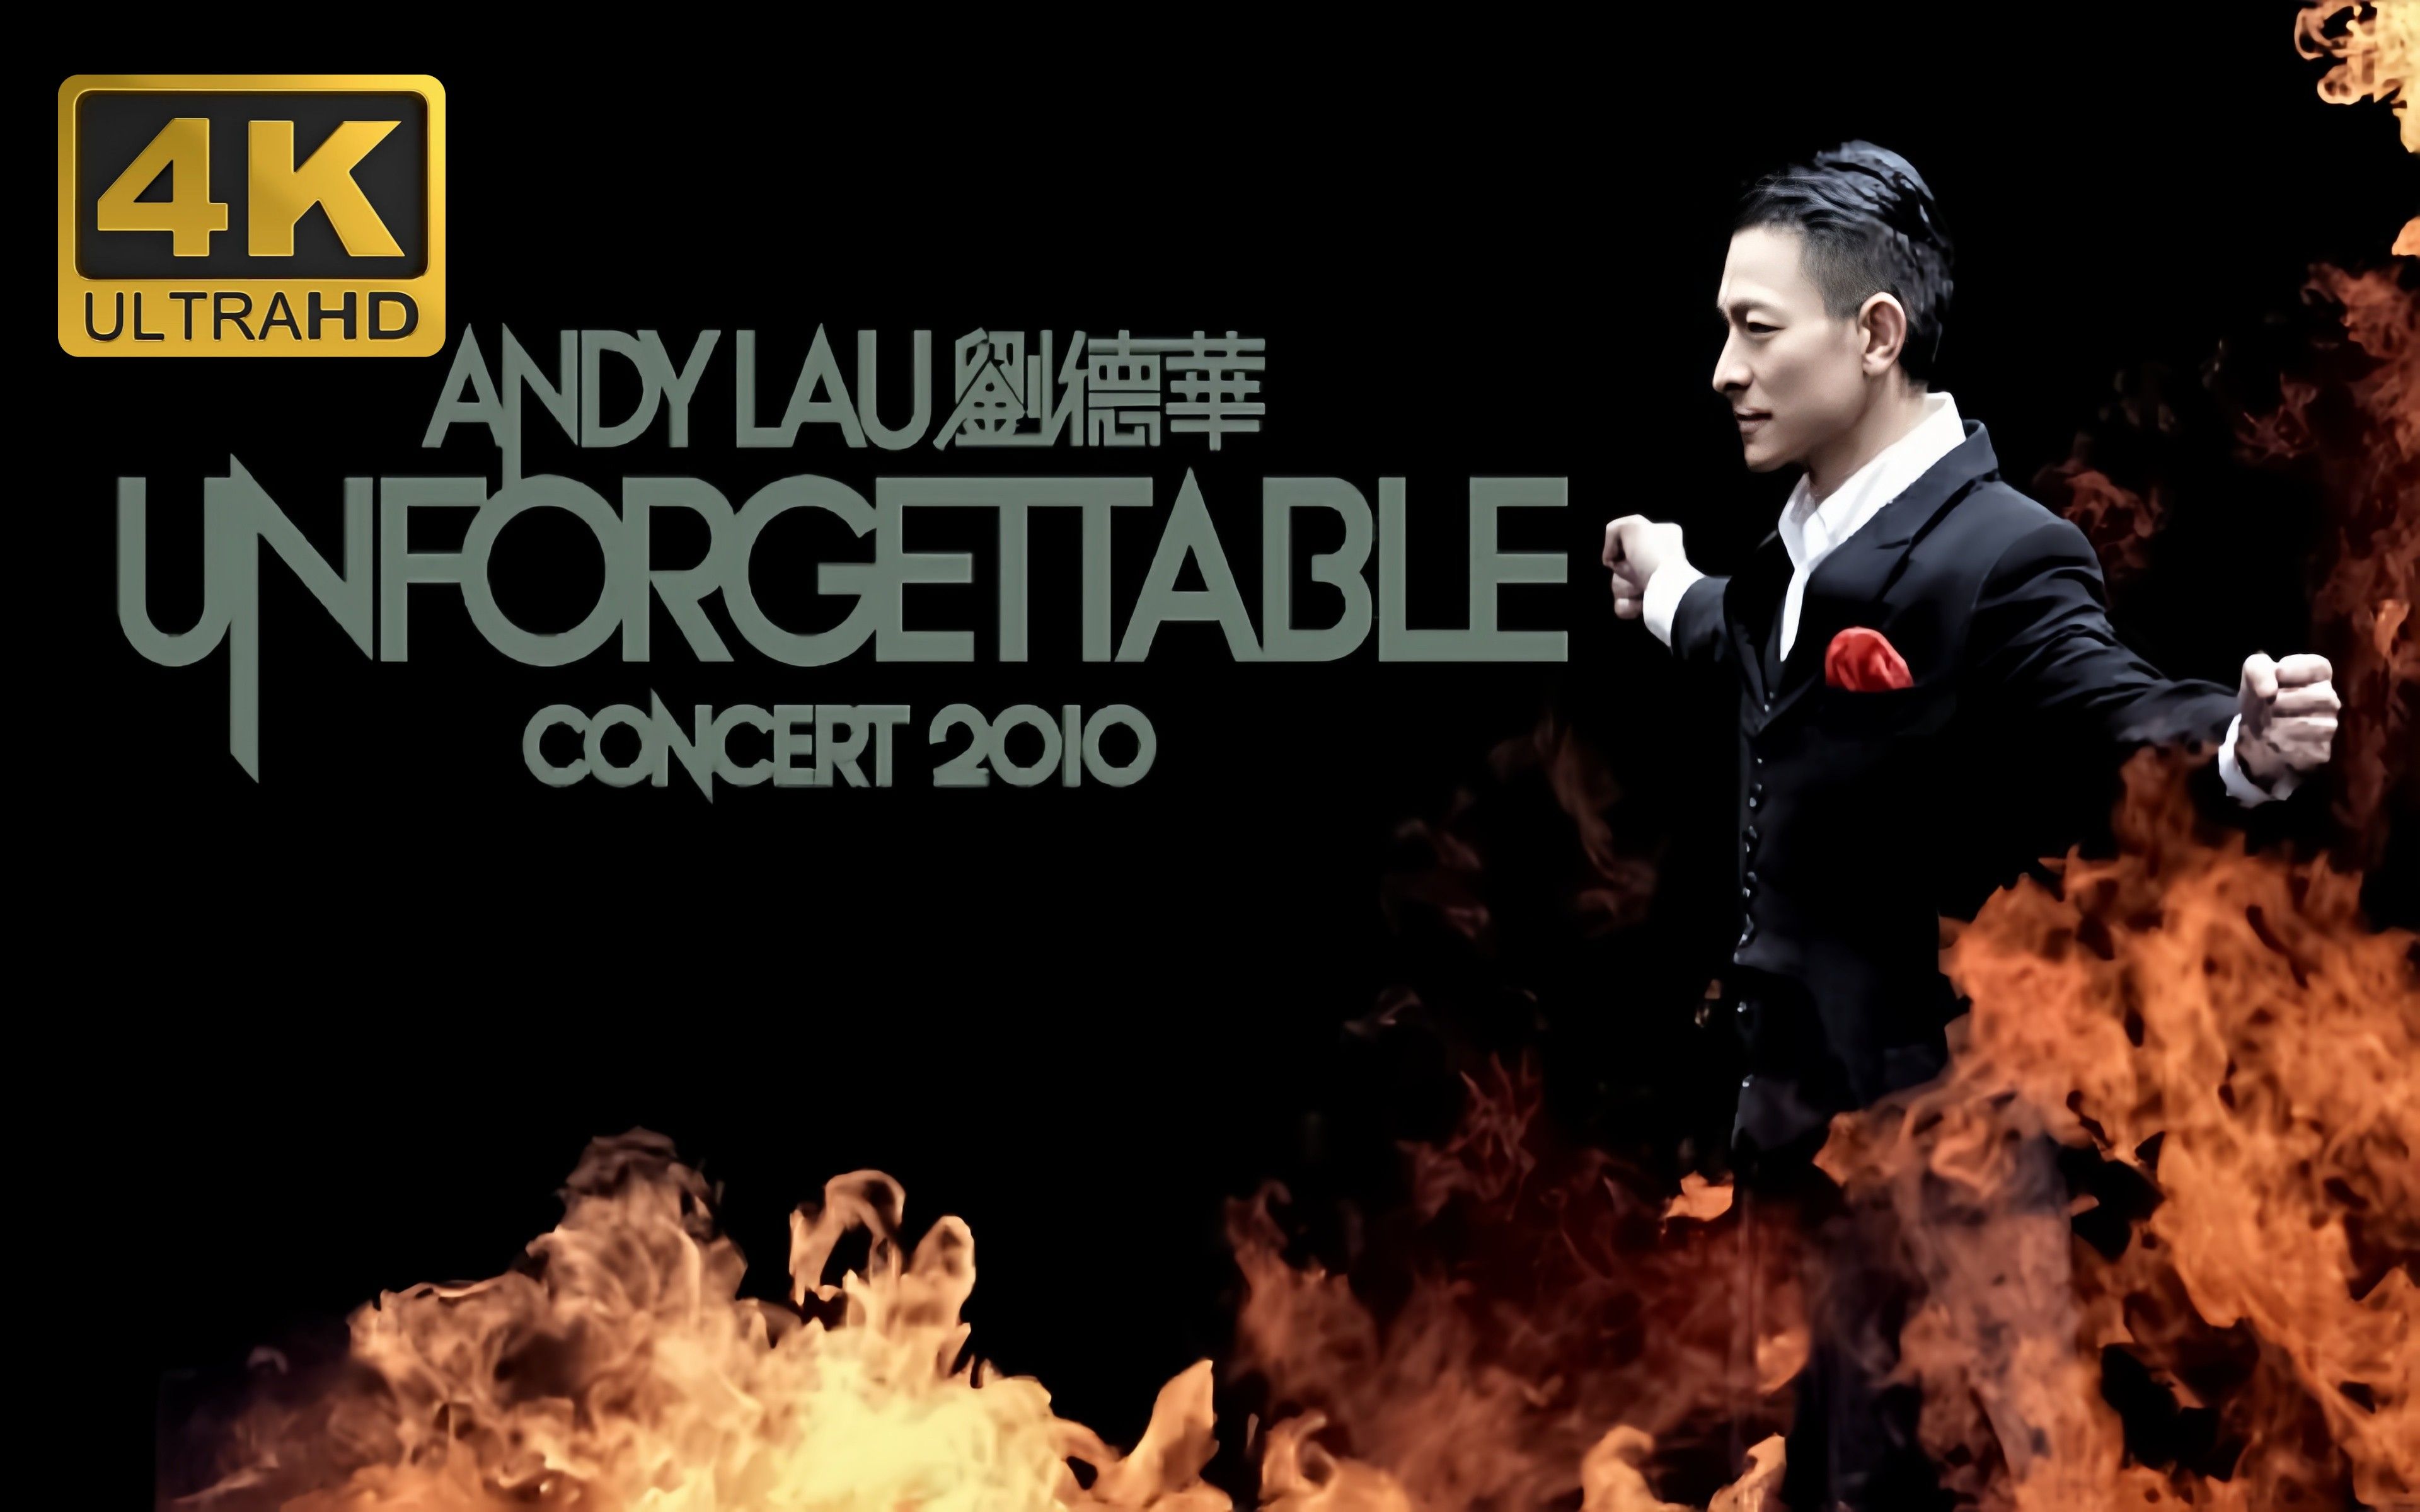 【4k】刘德华 unforgettable concert 2010 演唱会 自制字幕